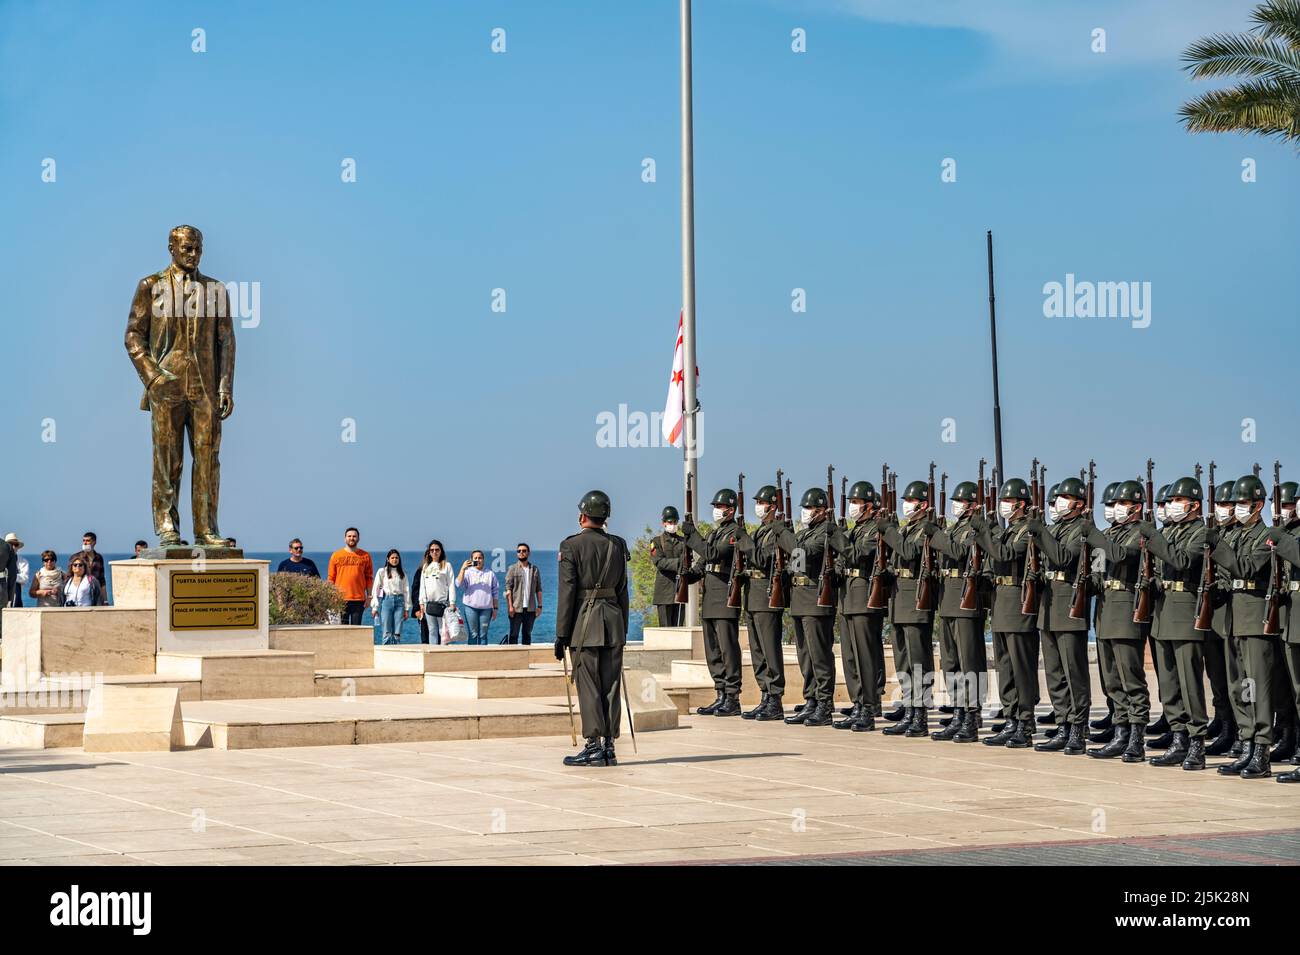 Parade türkischer Soldaten am Denkmal  von Kemal Atatürk an der Promenade in Kyrenia oder Girne, Türkische Republik Nordzypern, Europa  |  Turkish sol Stock Photo